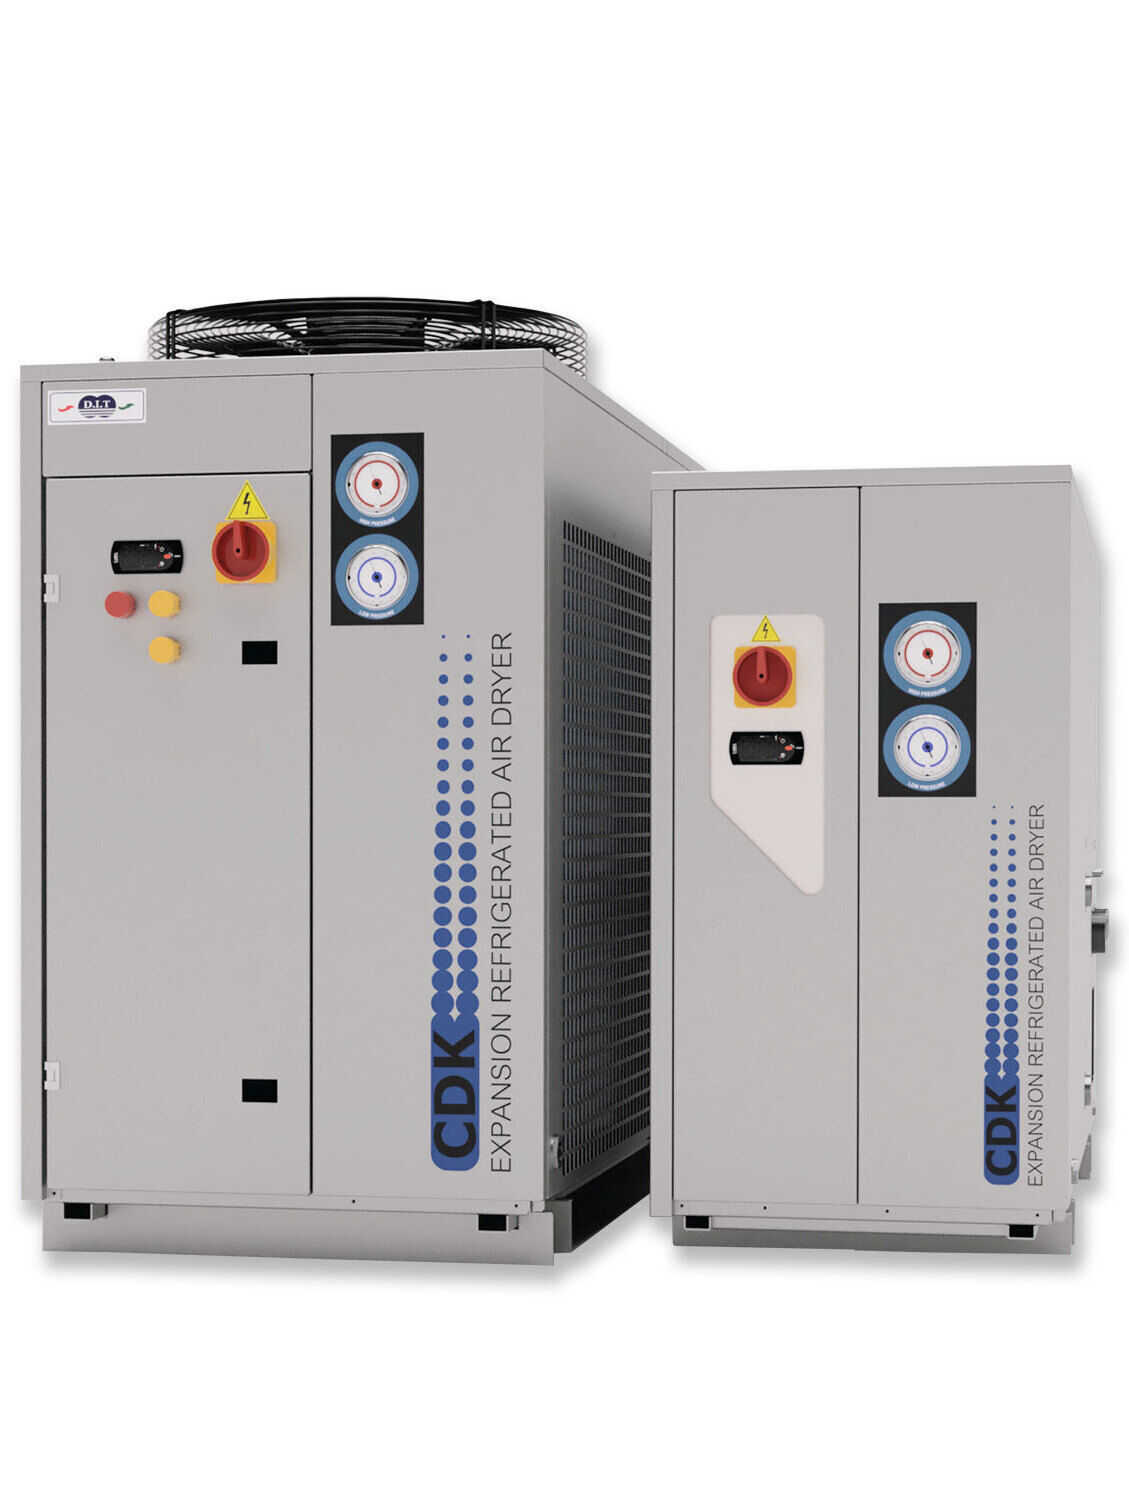 รับผลิตและจำหน่าย เครื่องทำลมแห้ง Refrigerated Air Dryer มีทีมวิศวกรให้คำปรึกษา พร้อมบริการดูแลหลังการขาย จัดส่งฟรีกรุงเทพปริมณฑล